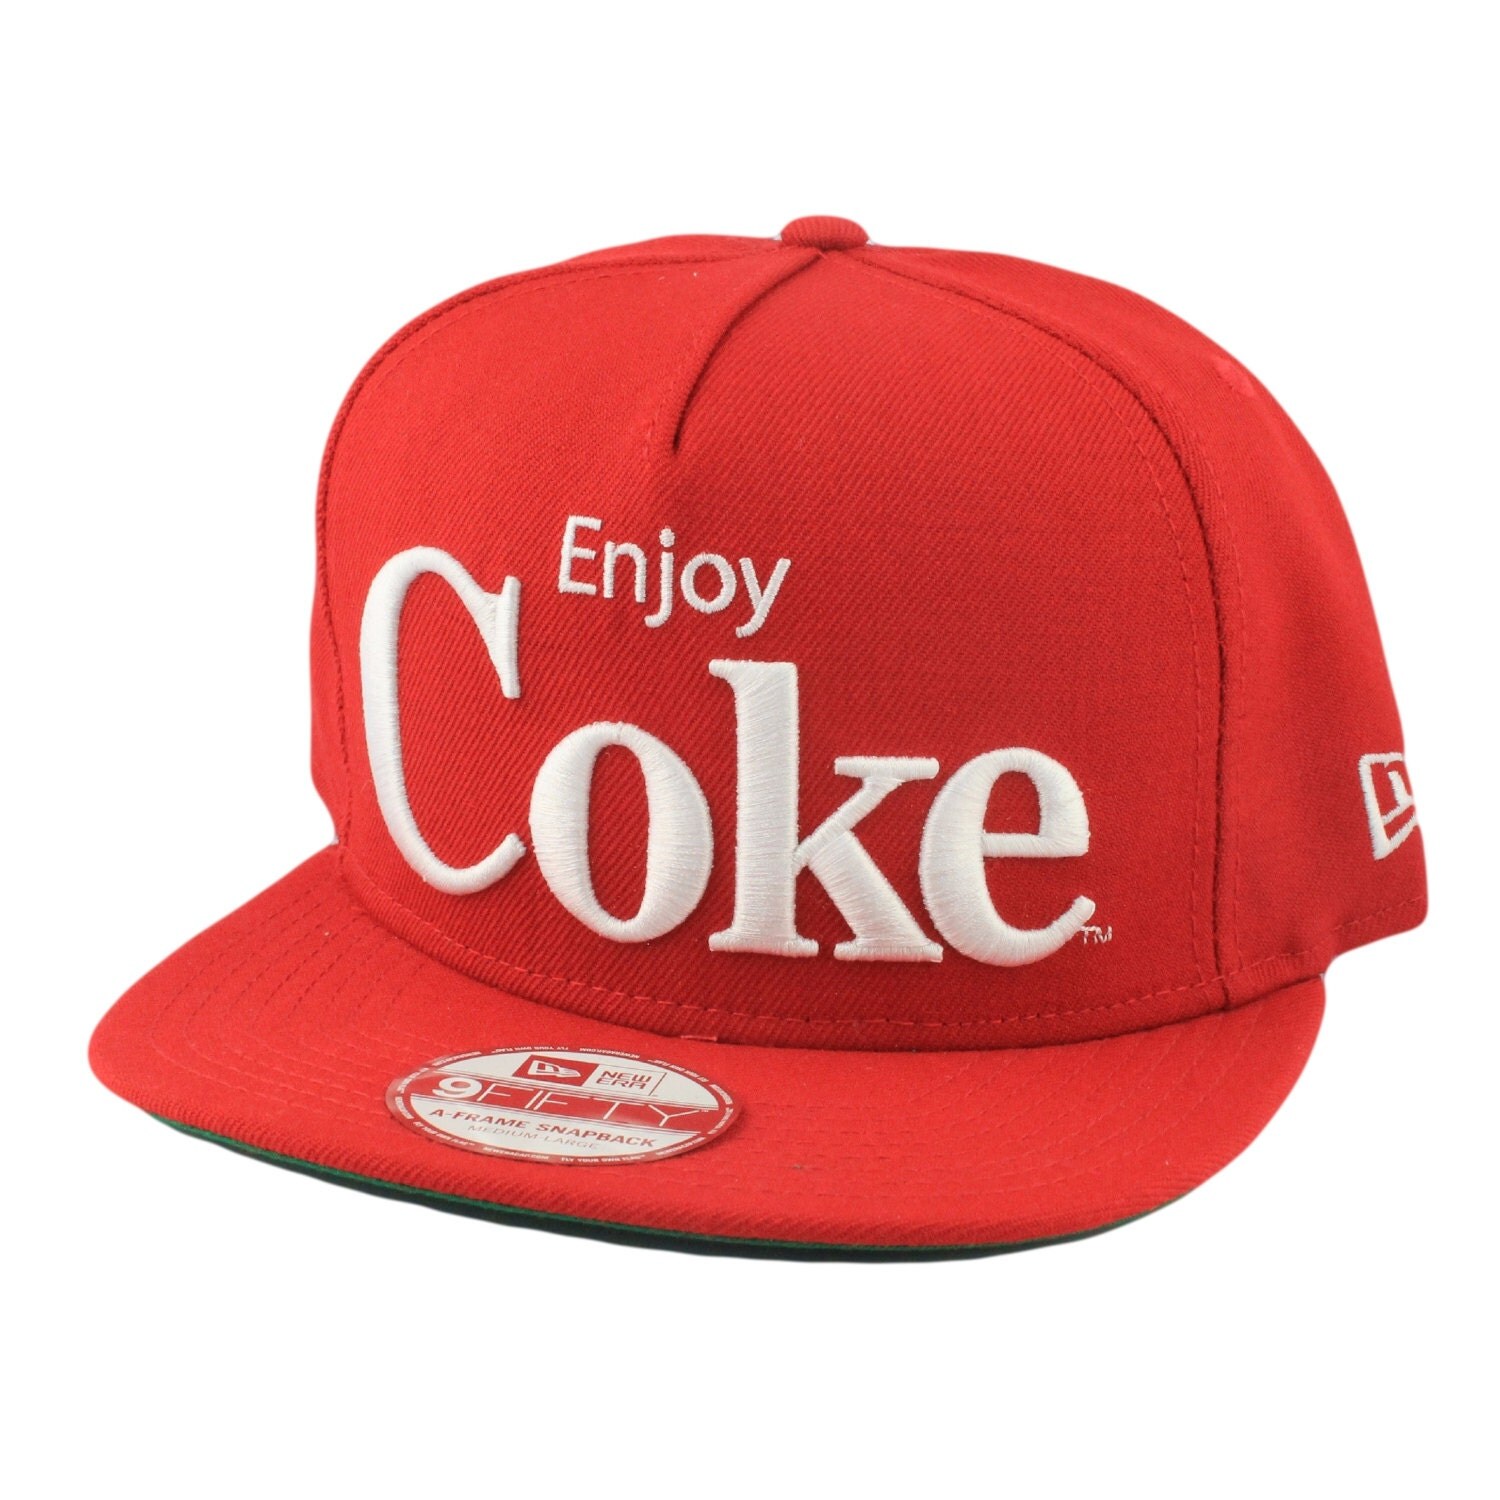 Custom Coca Colaenjoy Coke Snapback By Shopbspk On Etsy